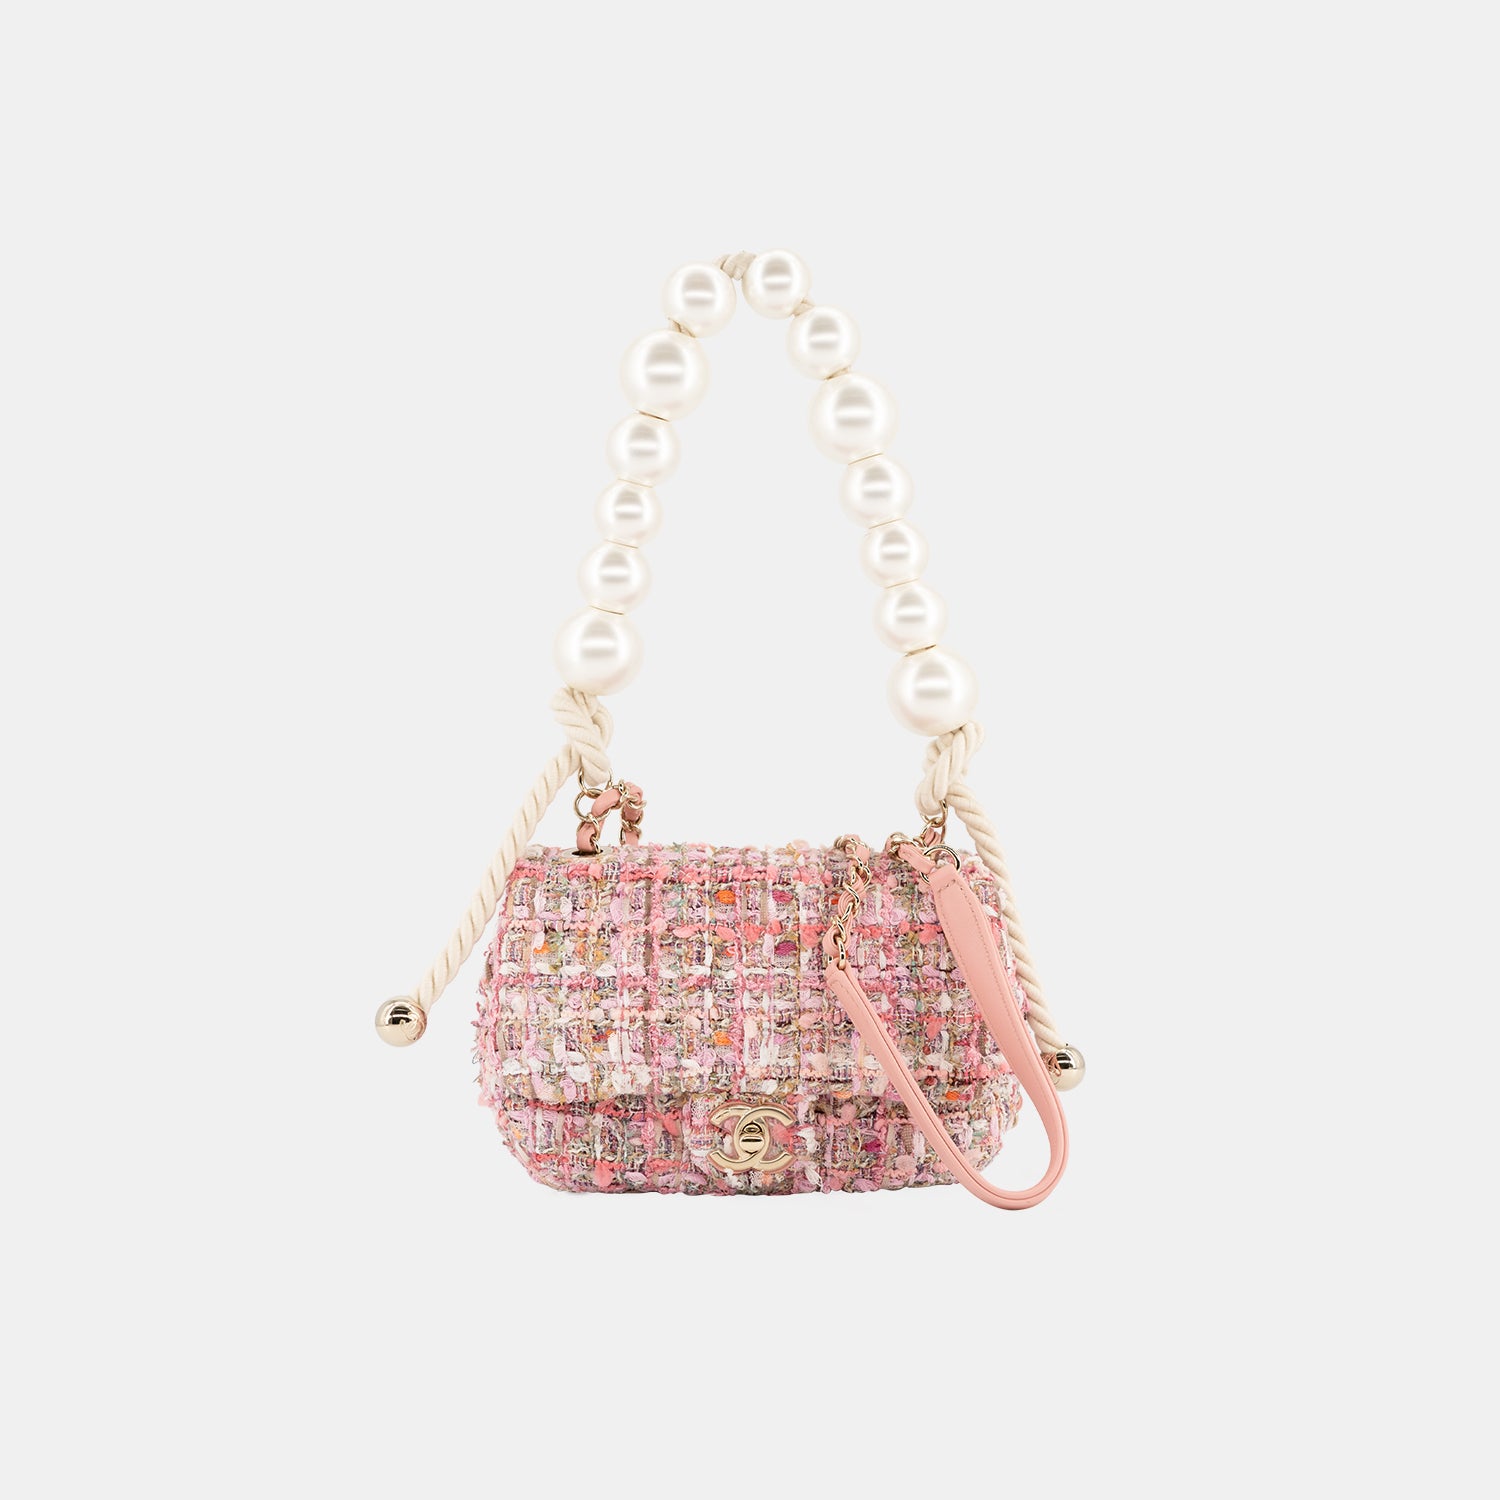 Chanel Tweed Pink Flap Bag